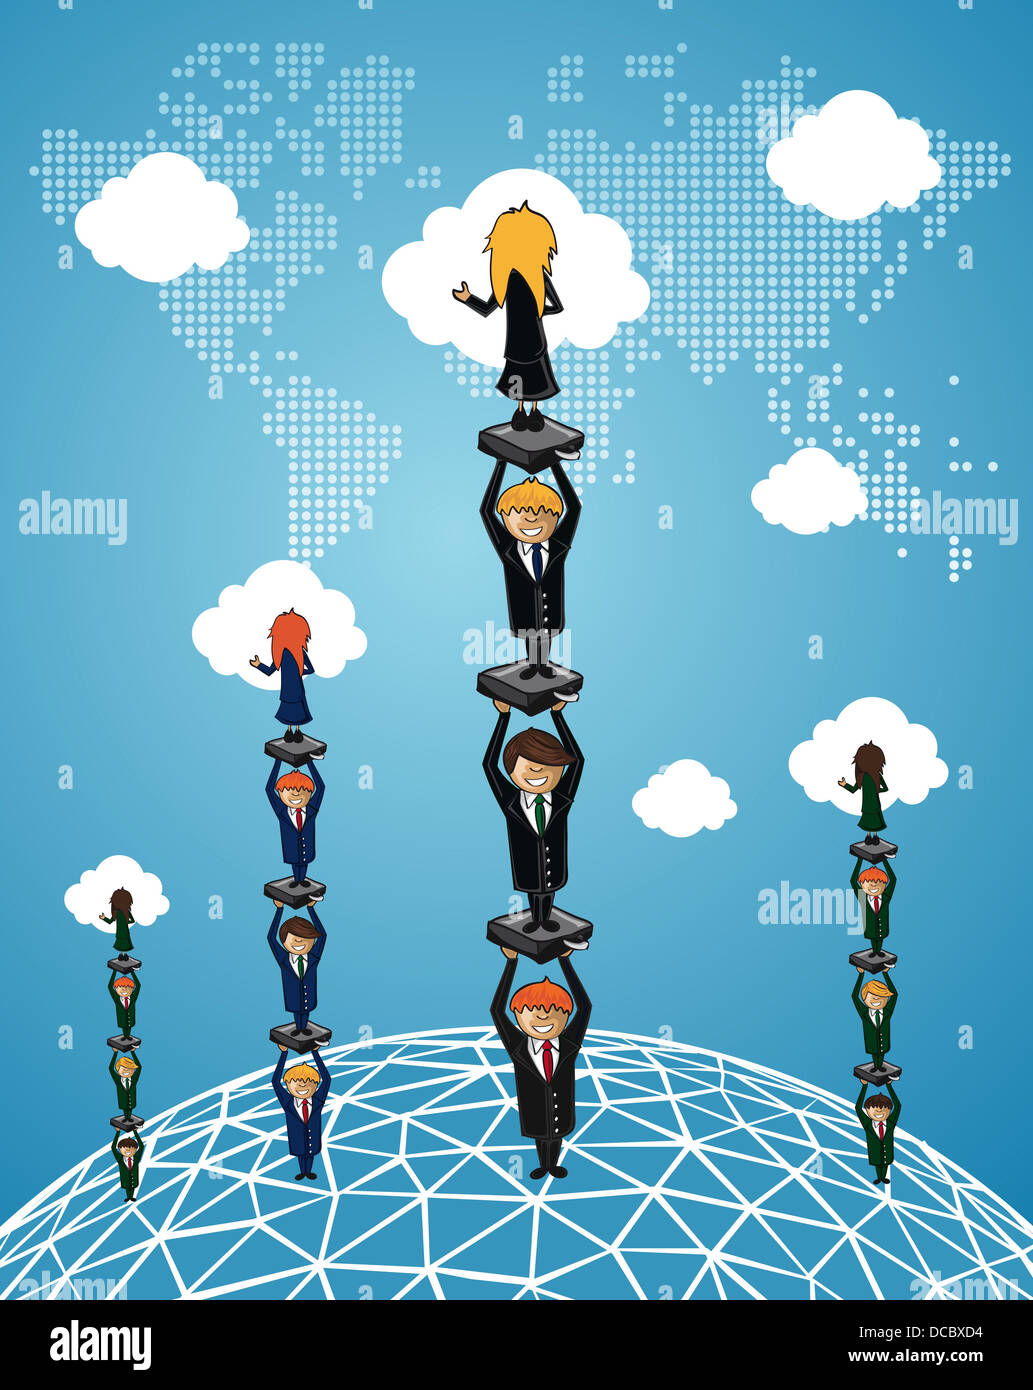 Les gens d'affaires mondial du groupe de travail le succès en utilisant le cloud computing cartoon illustration. Couches de fichier vectoriel pour une manipulation facile et coloris. Banque D'Images